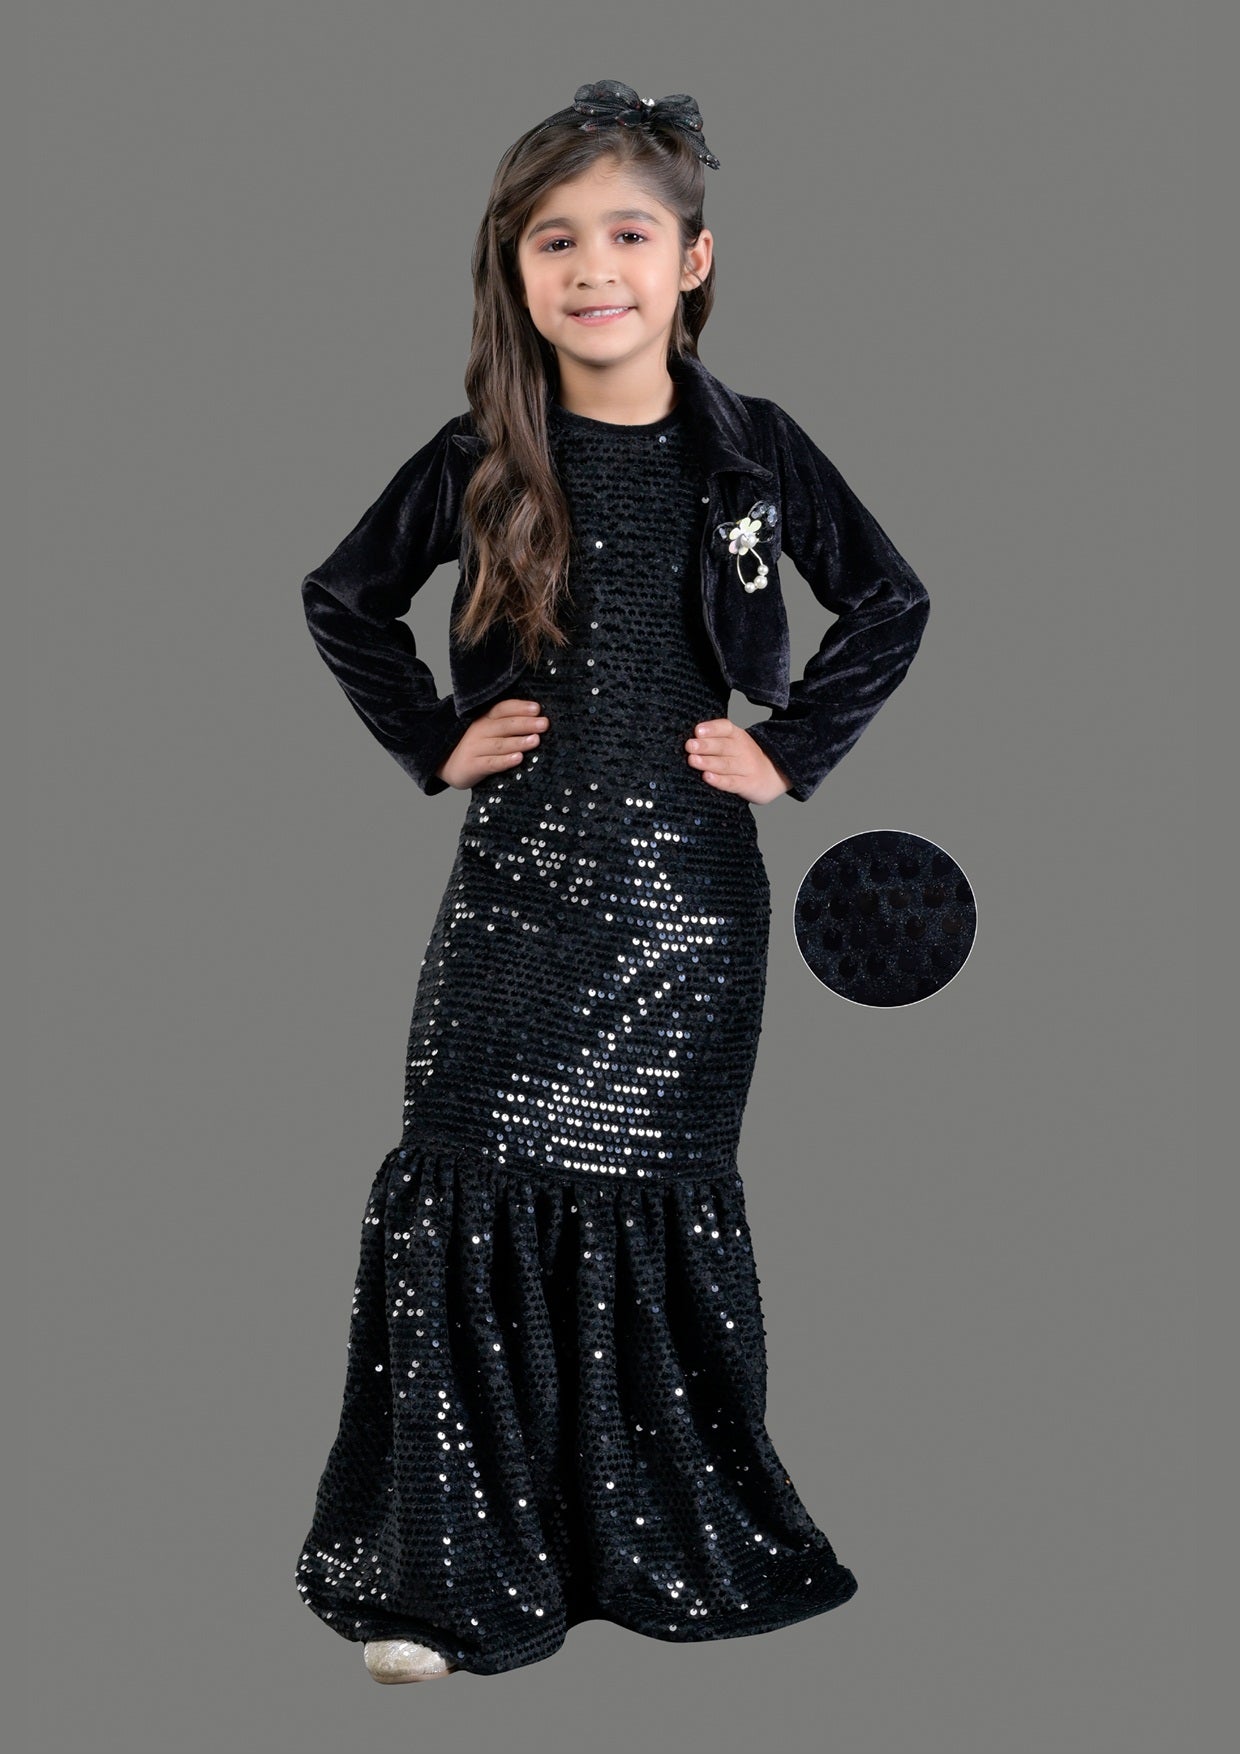 Titrit black velvet gown with shrug